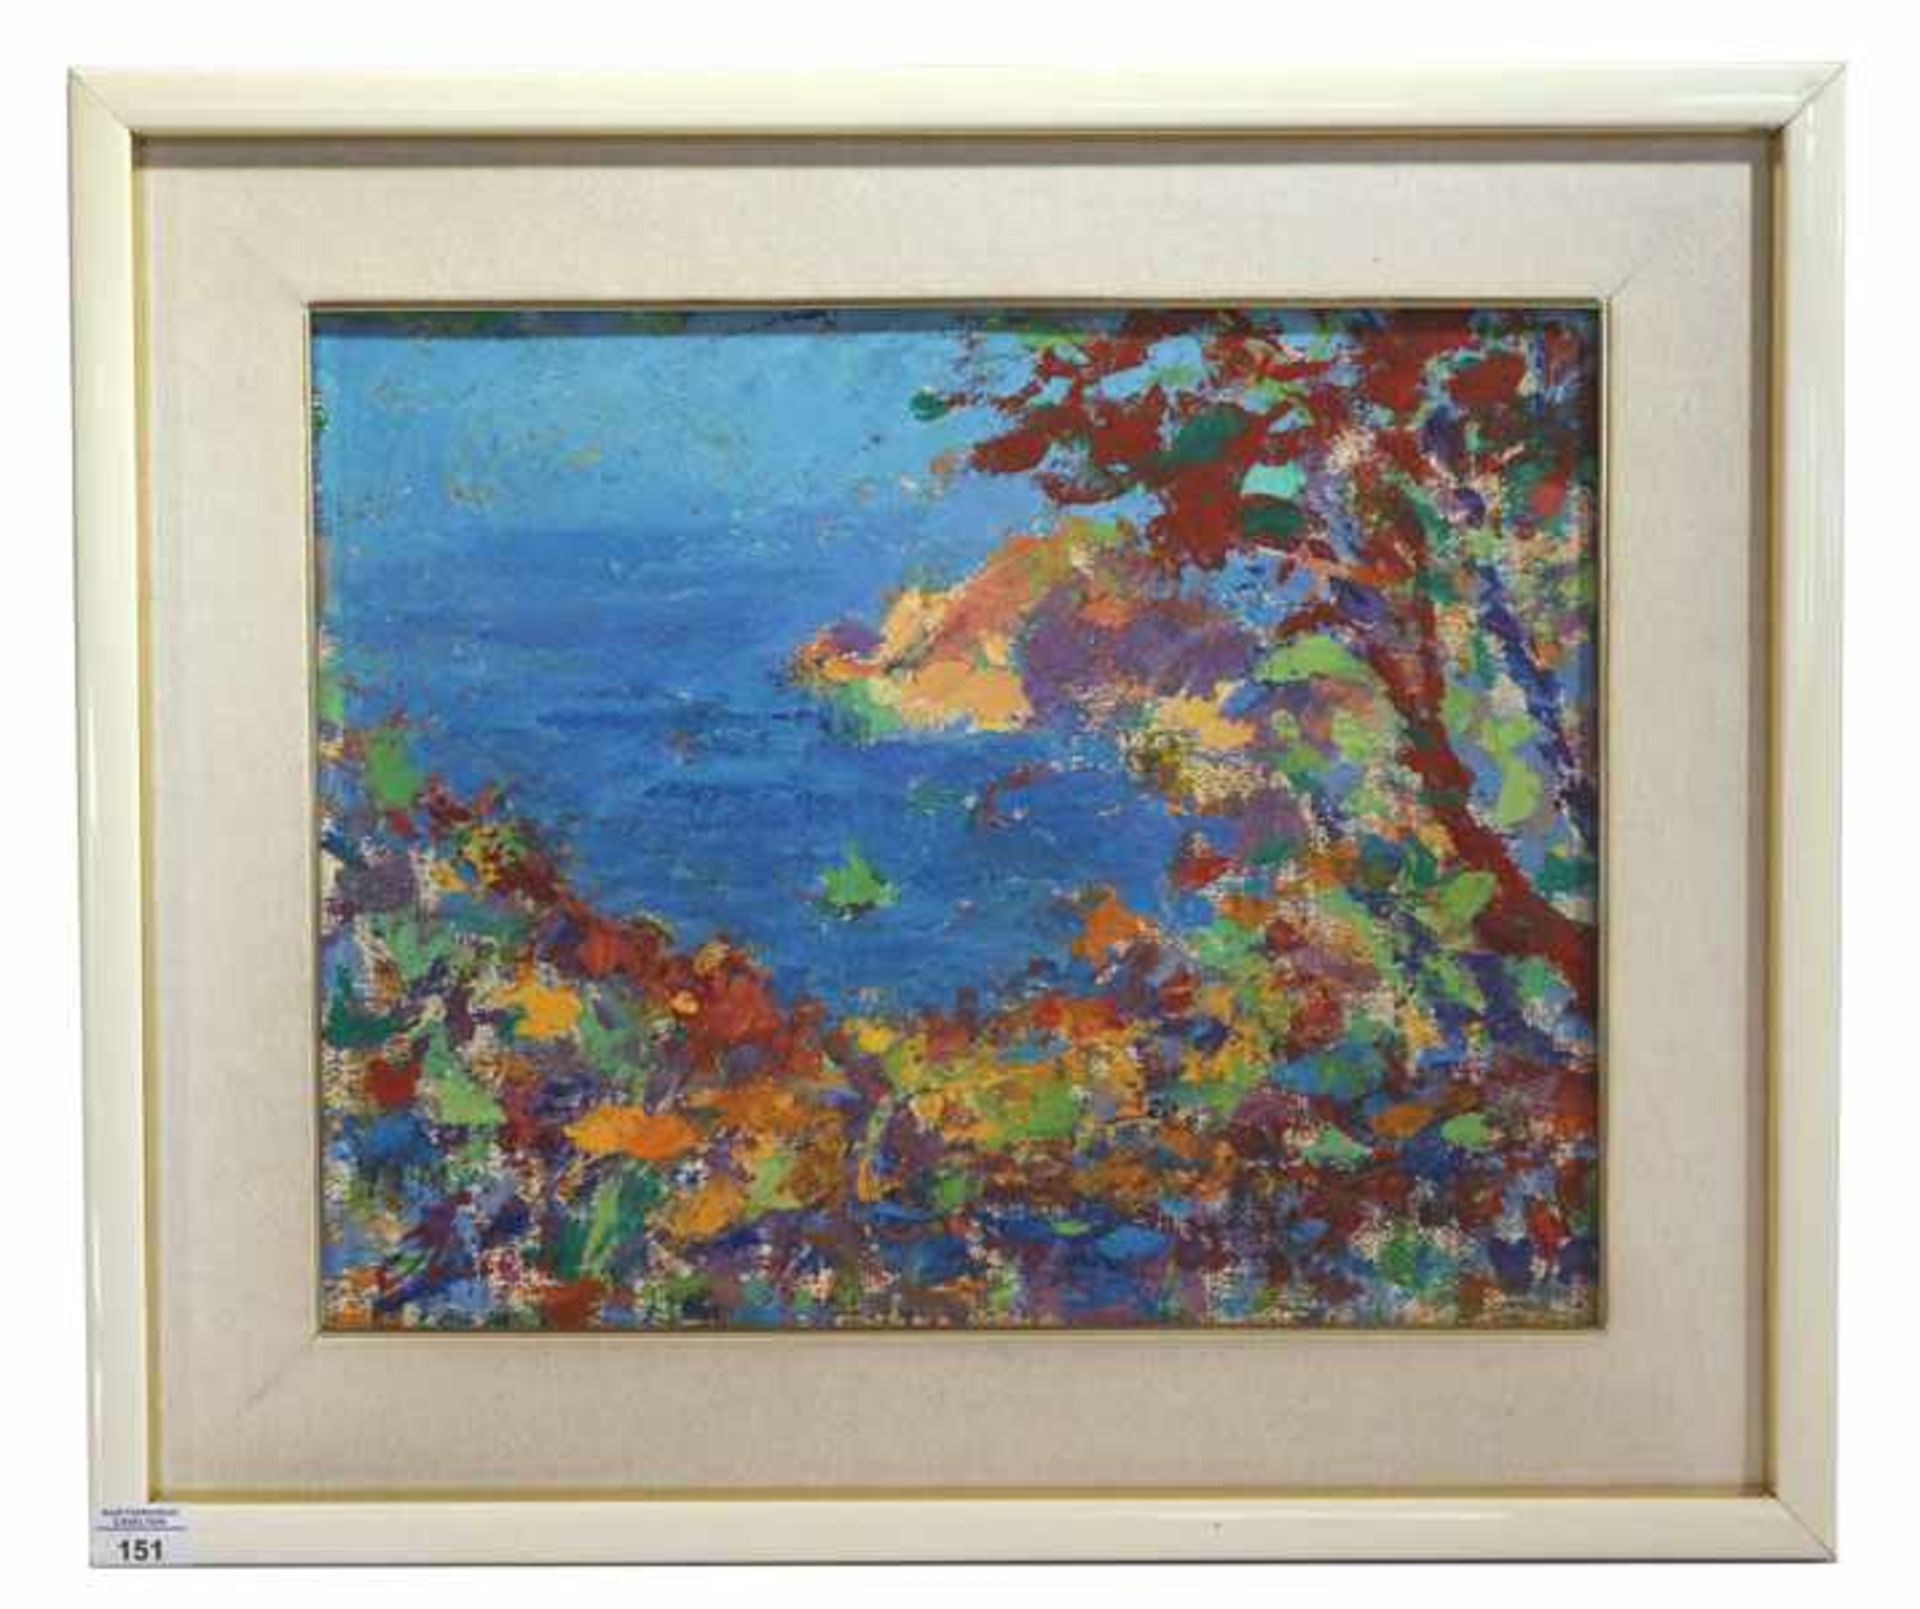 Gemälde ÖL/LW 'Abstrakte Küsten-Szenerie', signiert Olivieri, Guiseppe, gerahmt, Rahmen leicht